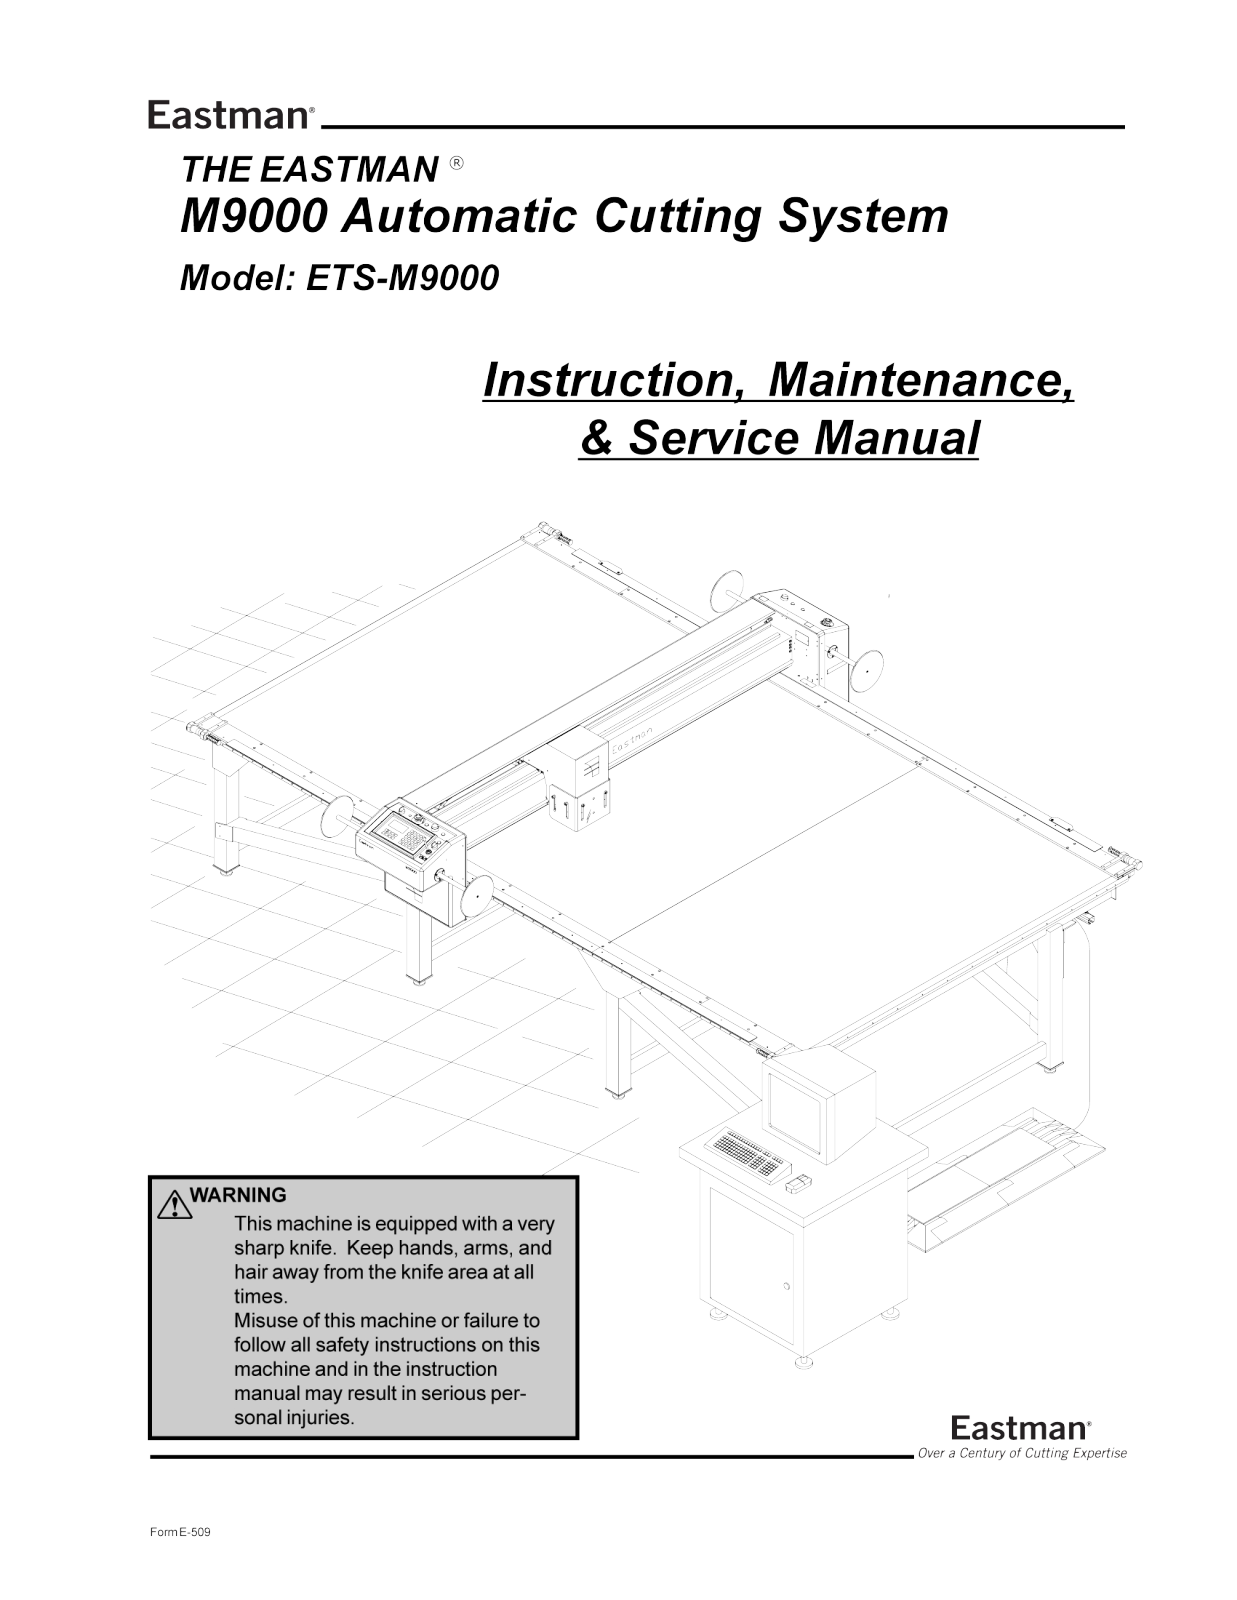 Eastman ETS-M9000 Parts List